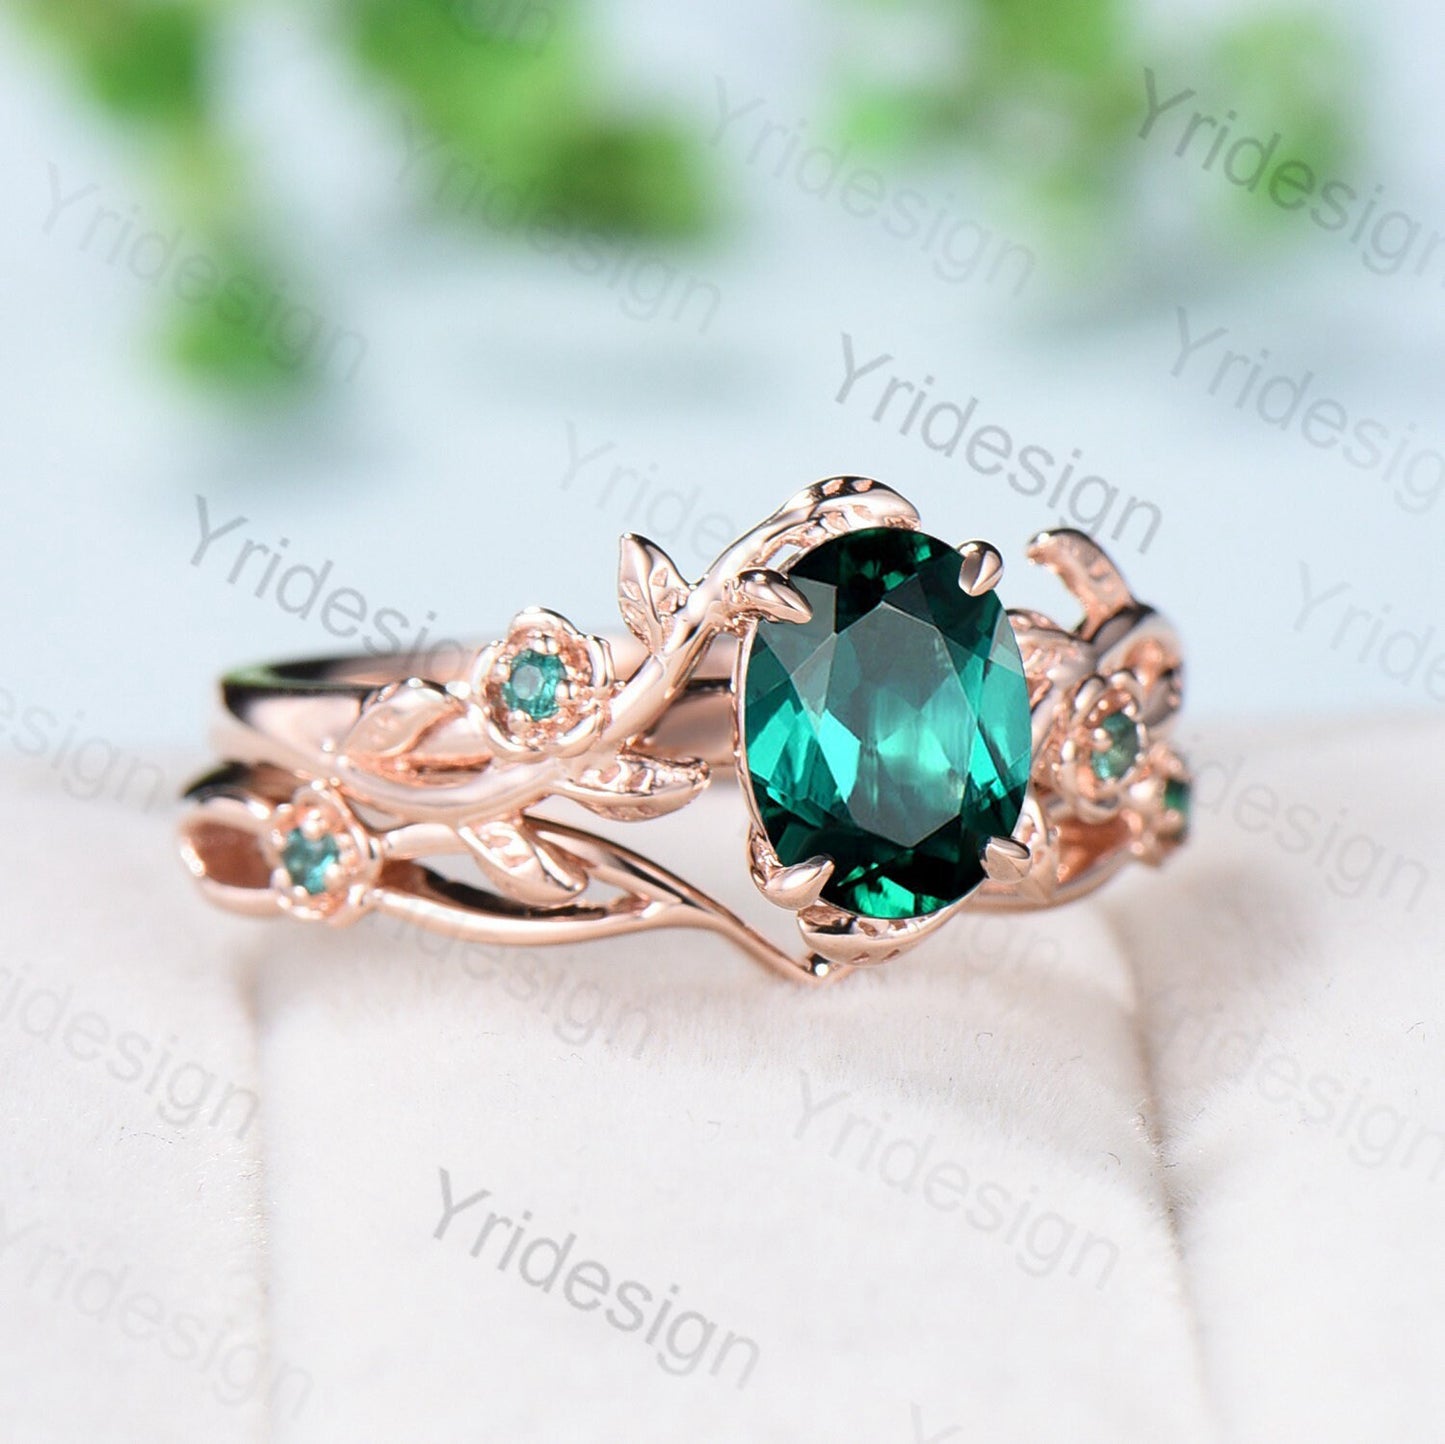 Floral flower emerald Ring Nature Inspired emerald wedding ring set vintage unique twig leaf engagement ring Art deco Branch bridal ring set - PENFINE